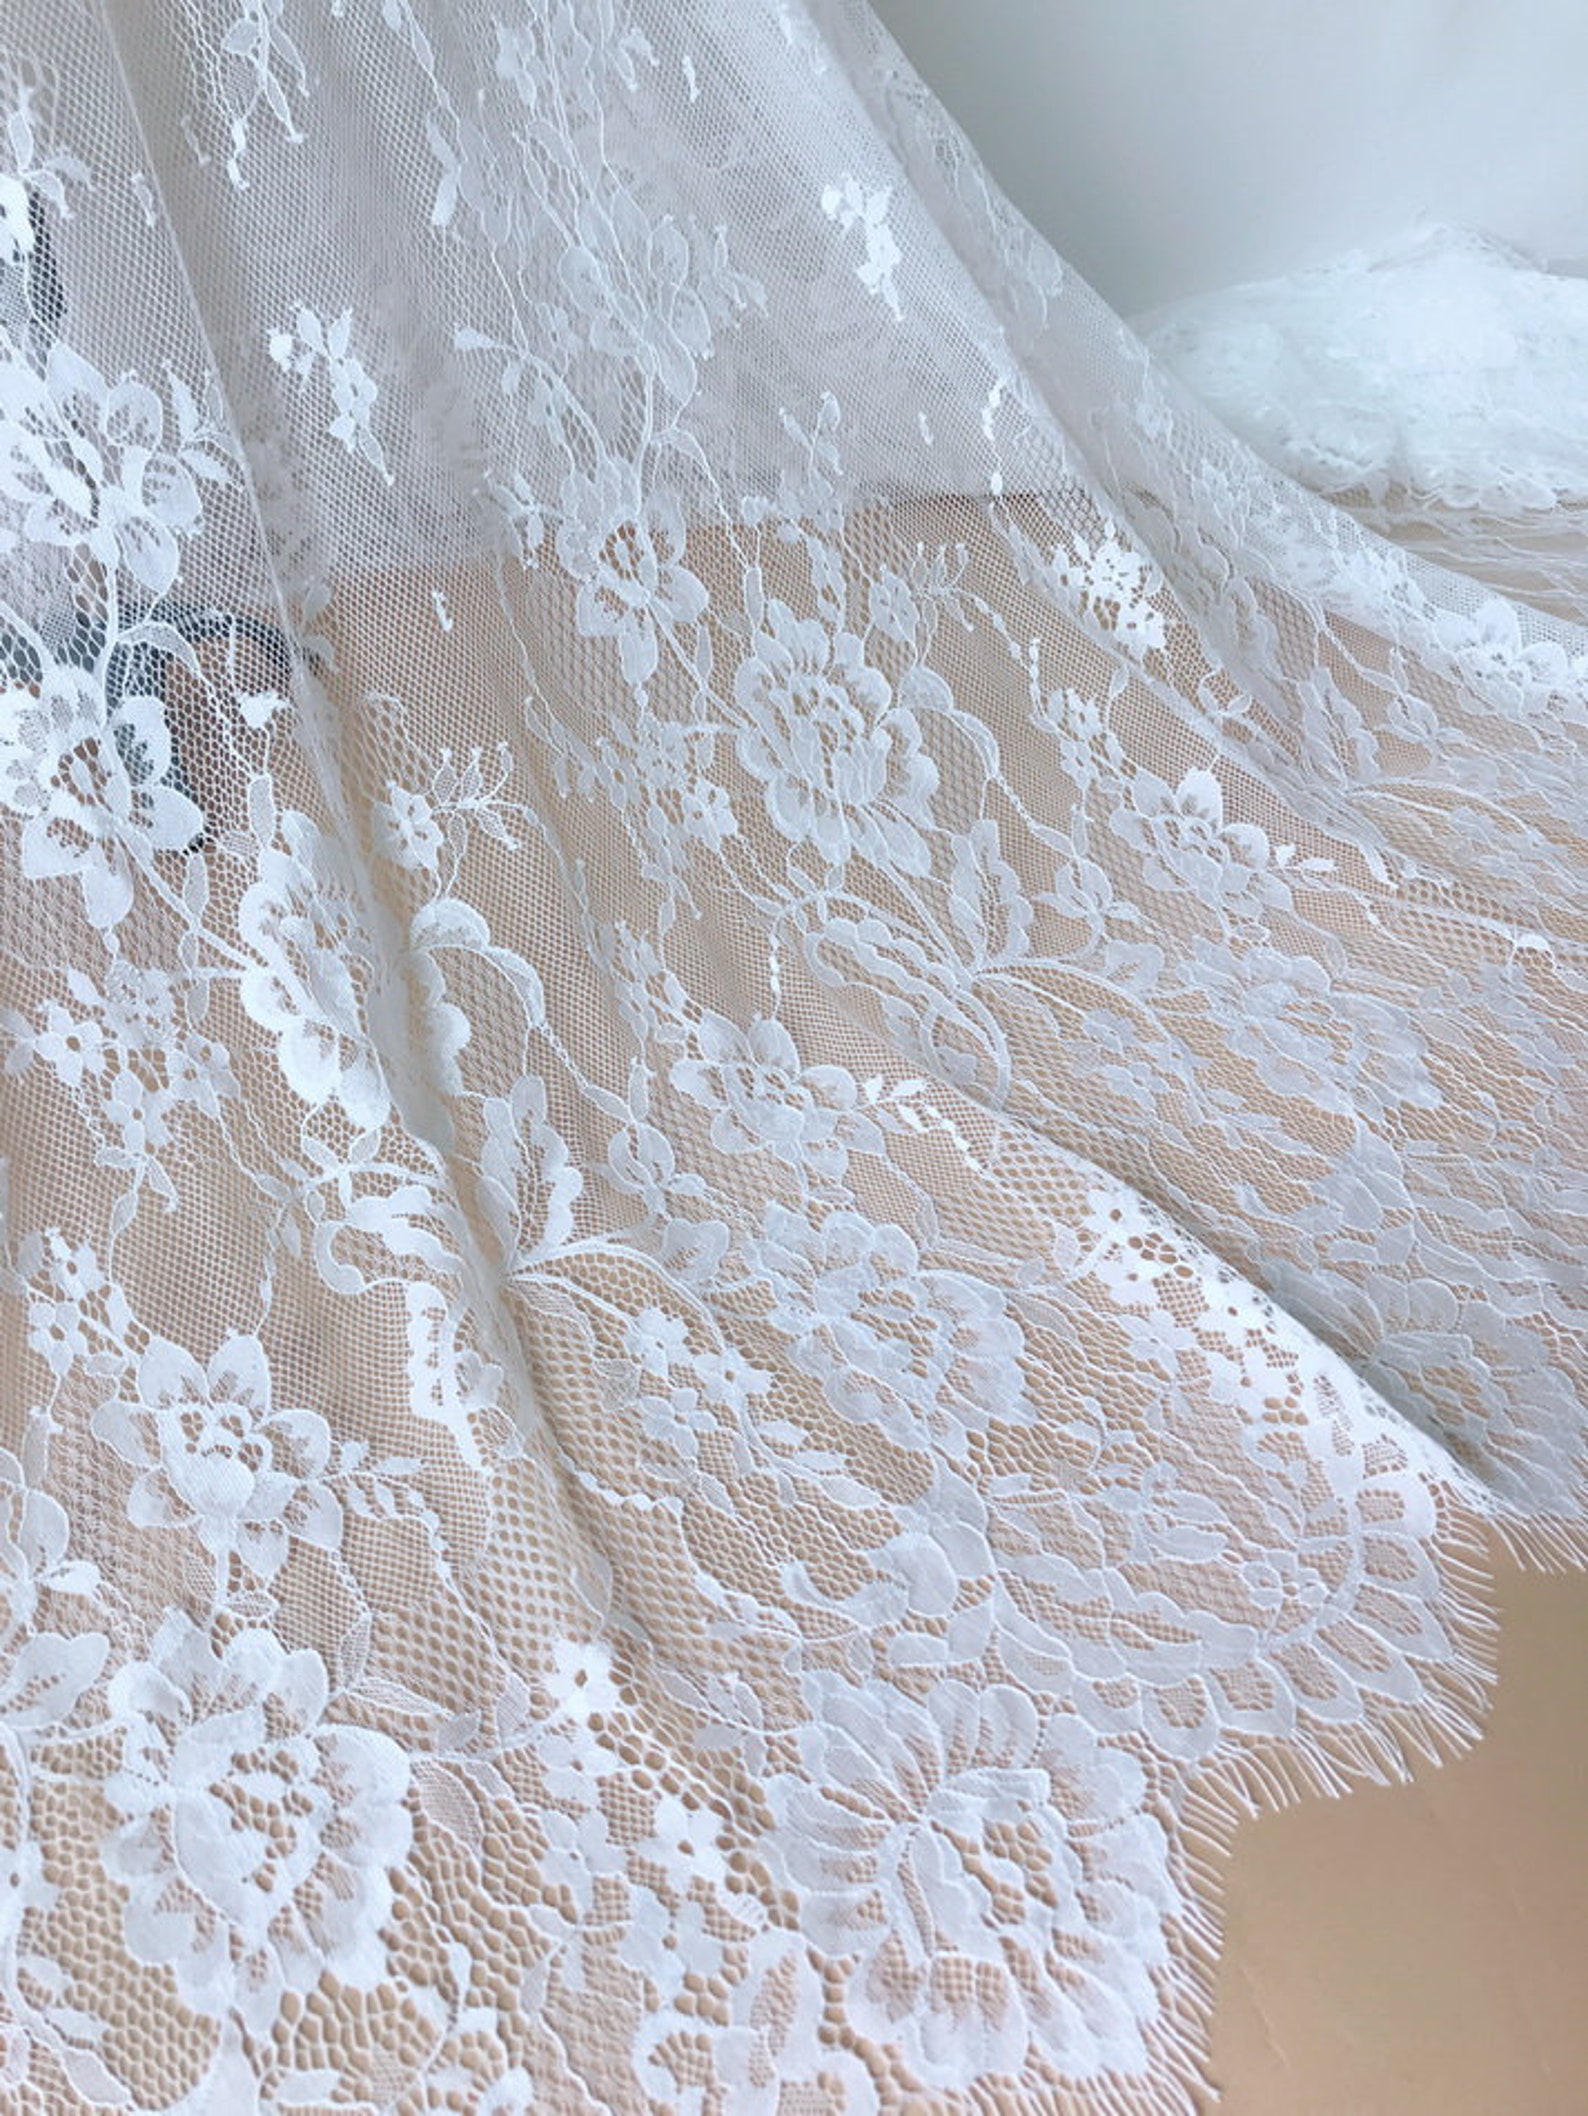 French Chantilly Lace Elegant Wedding Fabric Soft White Roses | Etsy